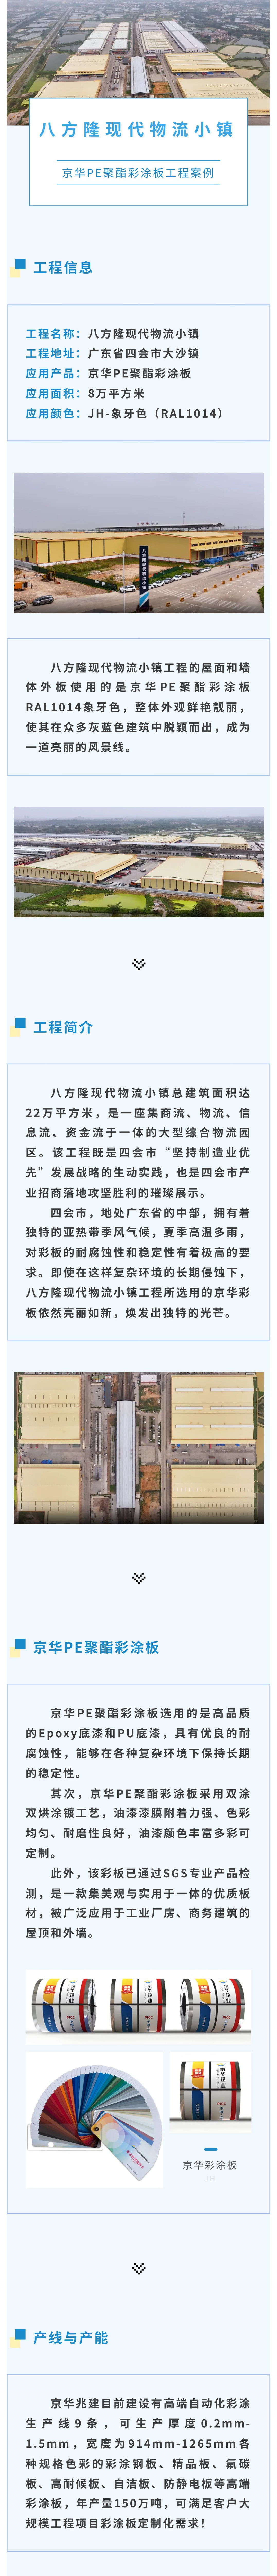 京華PE聚酯彩涂板工程案例丨八方隆現代物流小鎮墻屋面工程